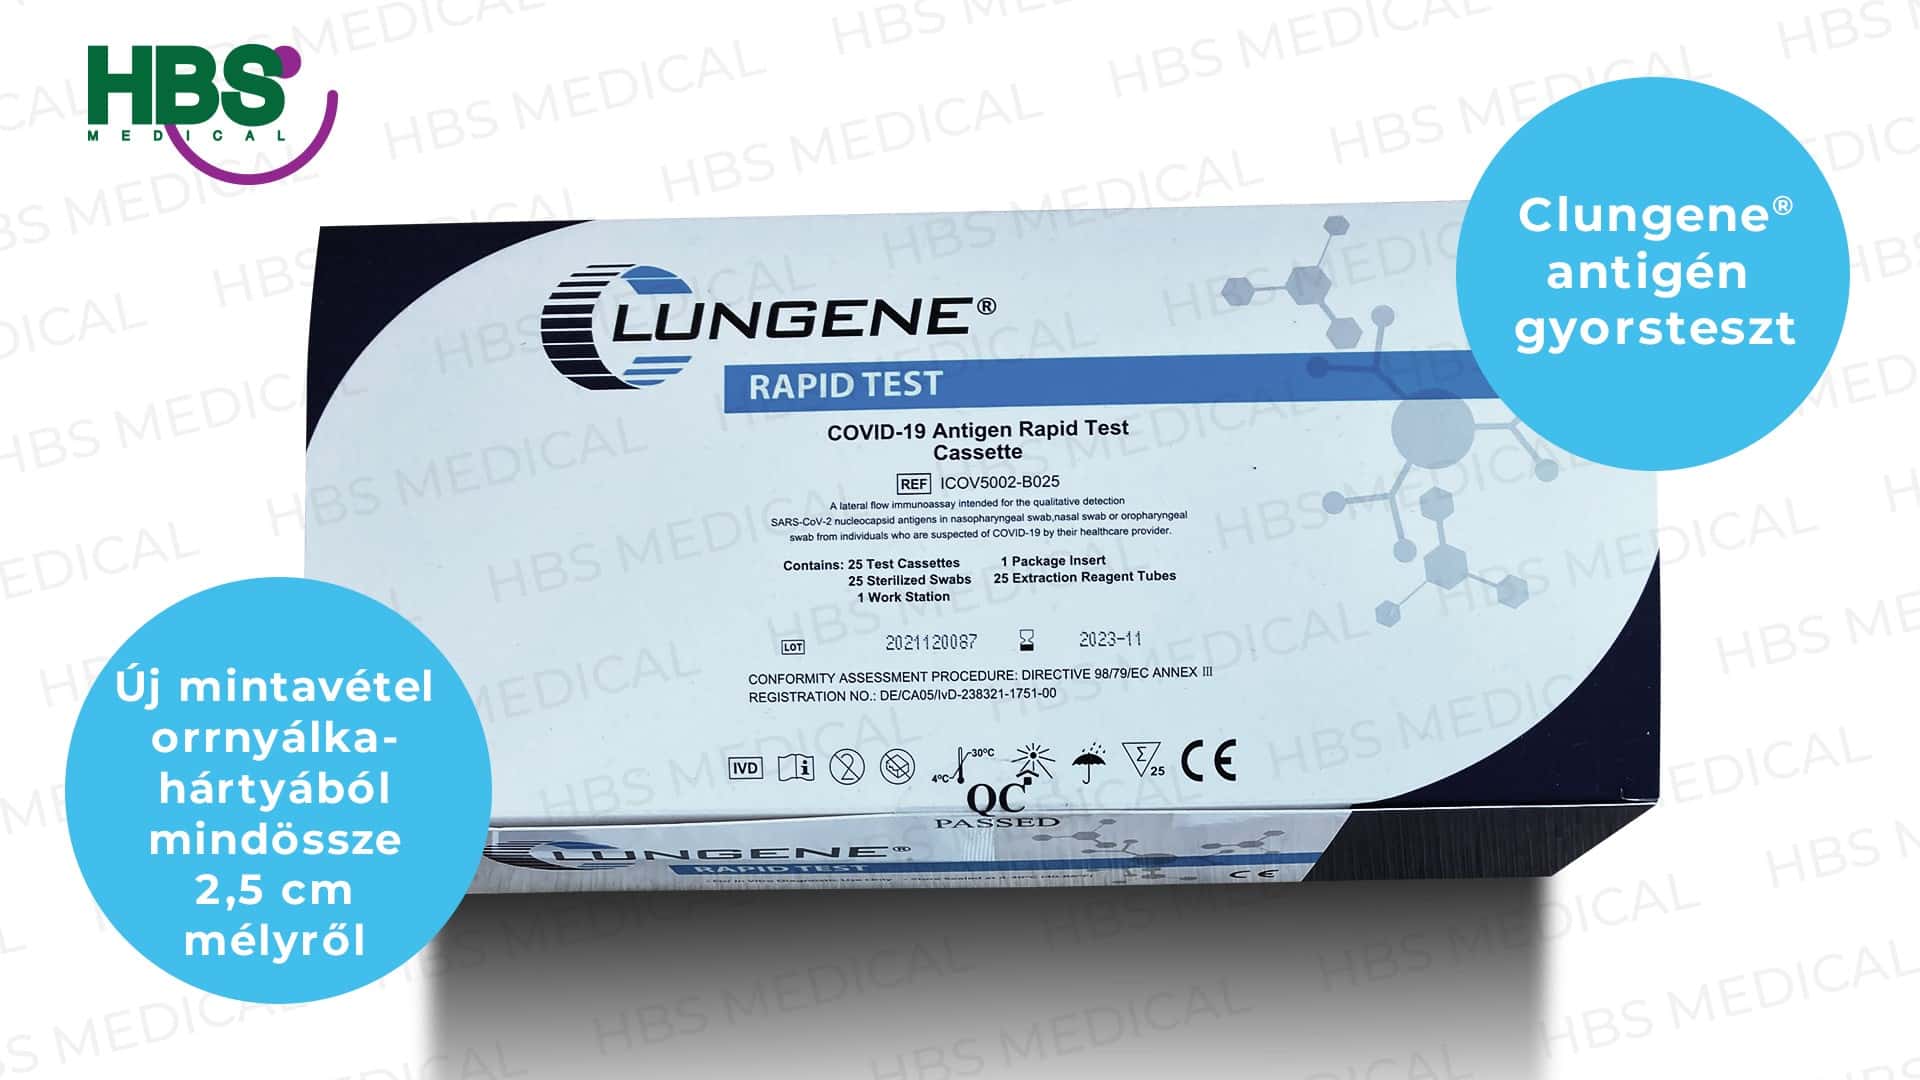 Clungene® COVID-19 antigén gyorsteszt